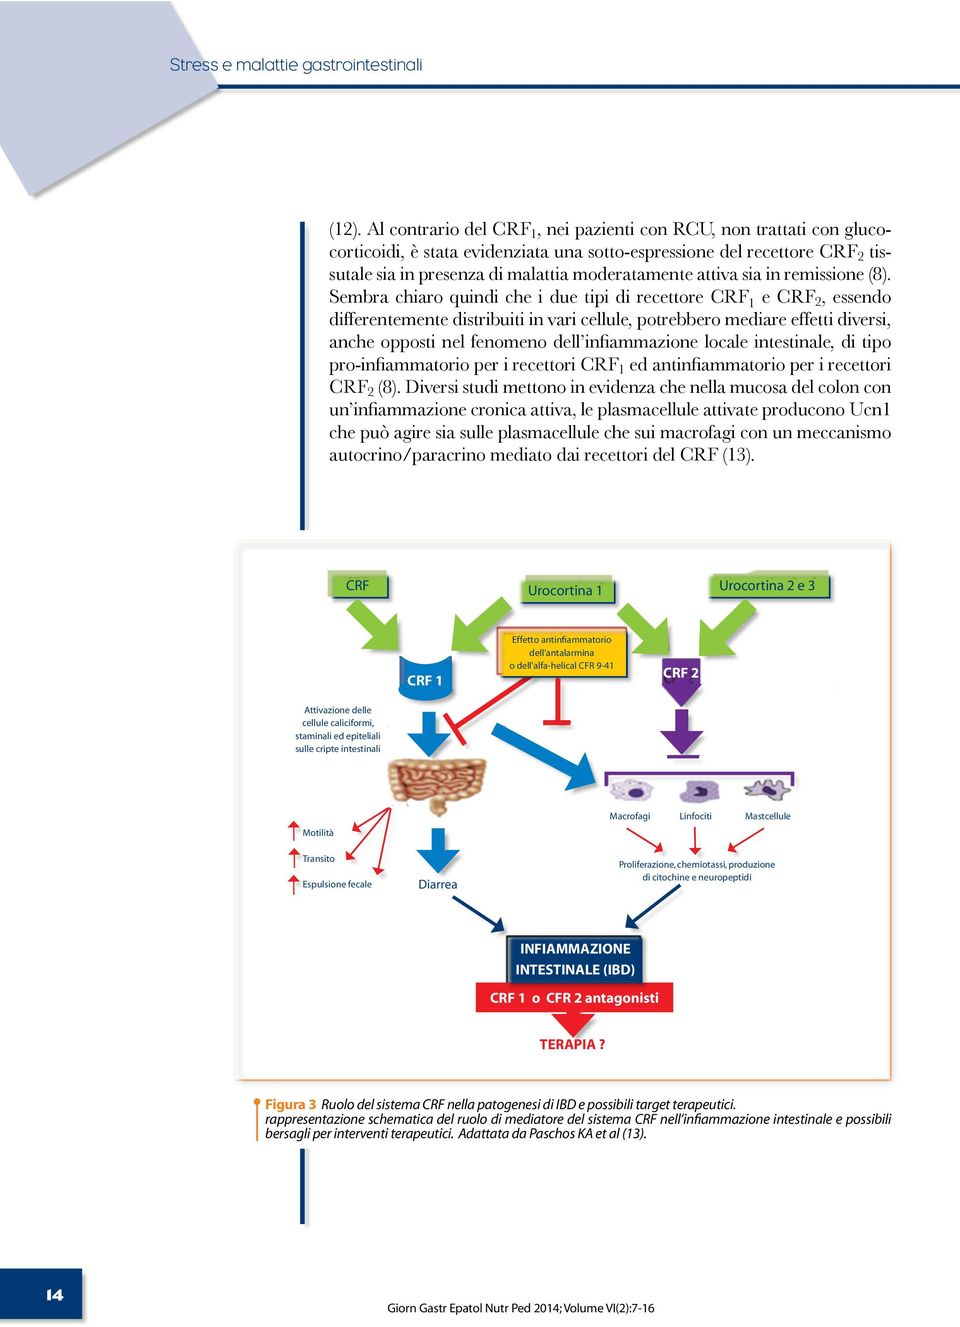 neuropeptidi INFIAMMAZIONE INTESTINALE (IBD) CRF 1 o CFR 2 antagonisti TERAPIA? Figura 3 Ruolo del sistema CRF nella patogenesi di IBD e possibili target terapeutici.